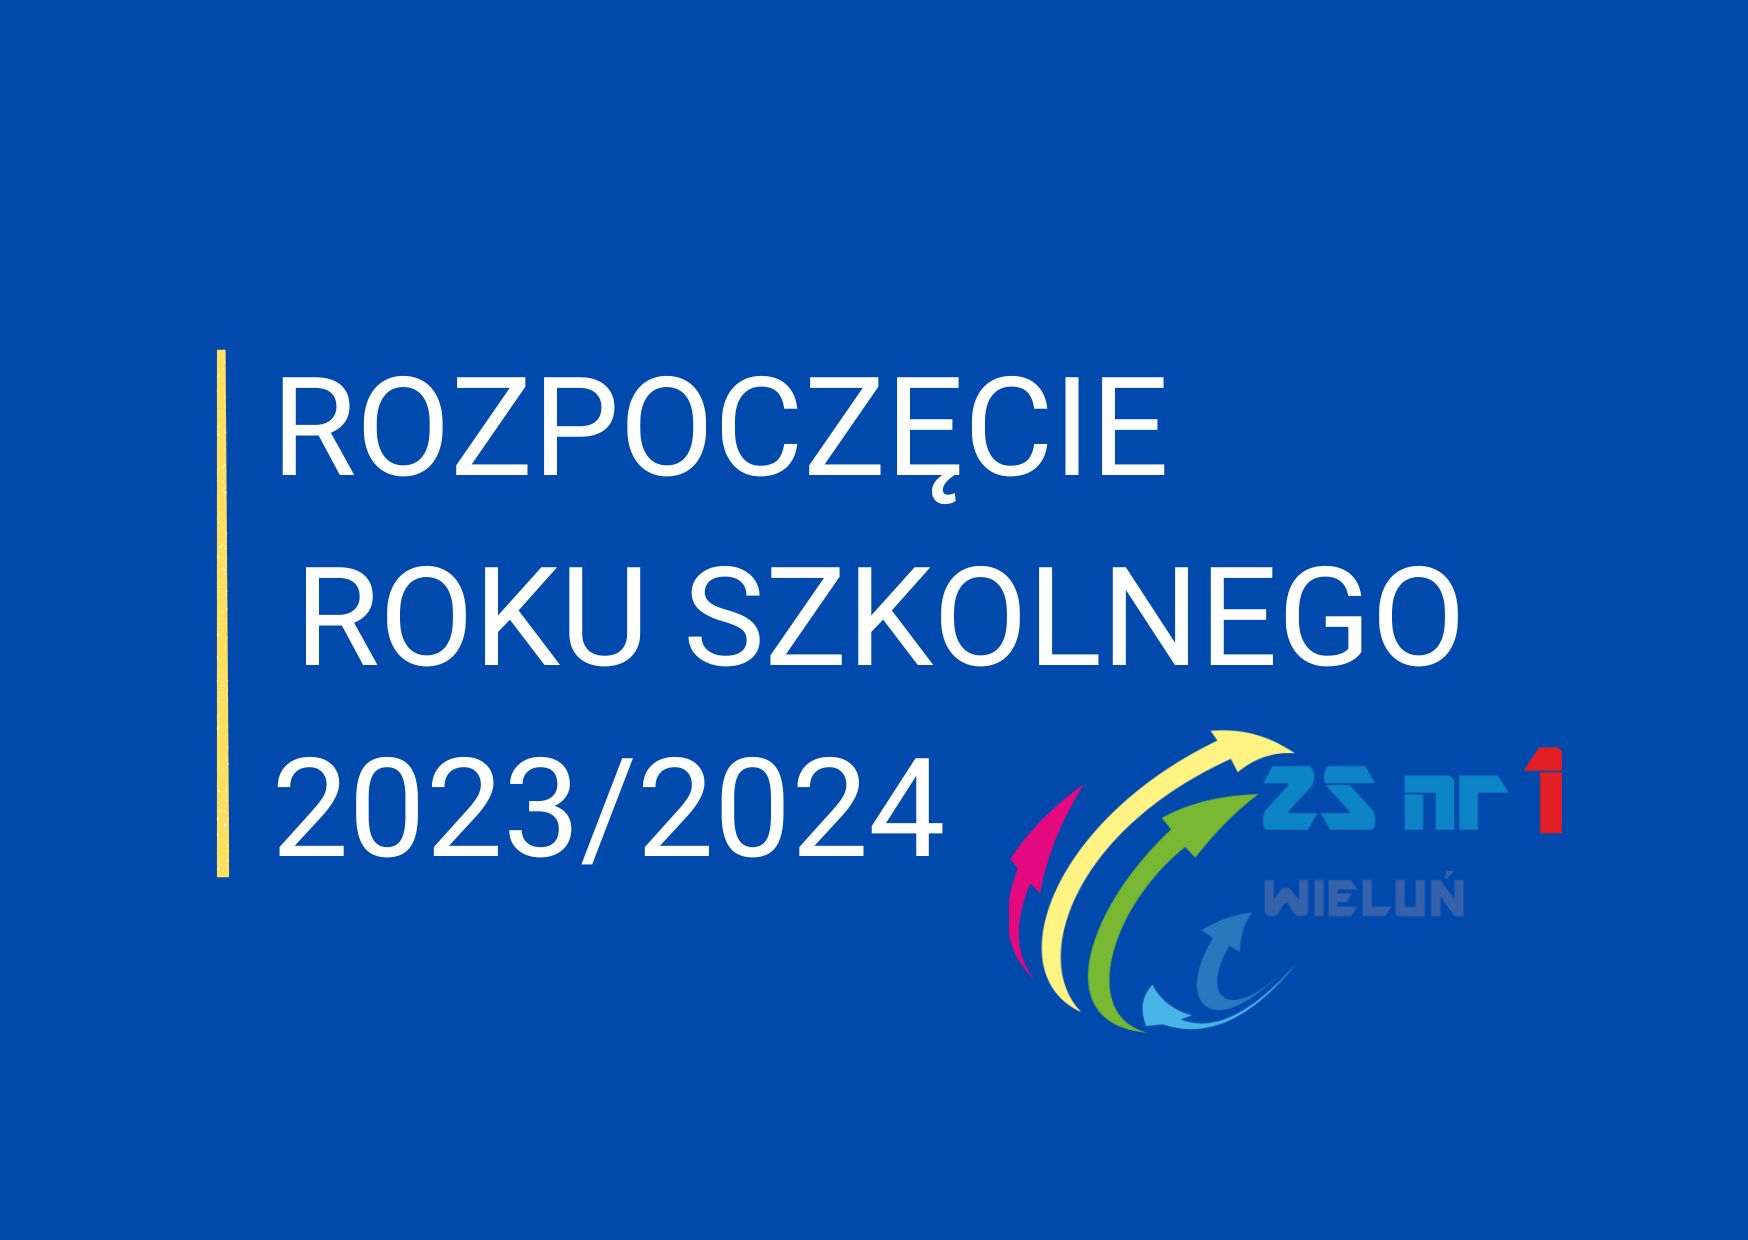 Rozpoczęcie roku szkolnego 2023/2024 w Zespole Szkół nr 1 w Wieluniu